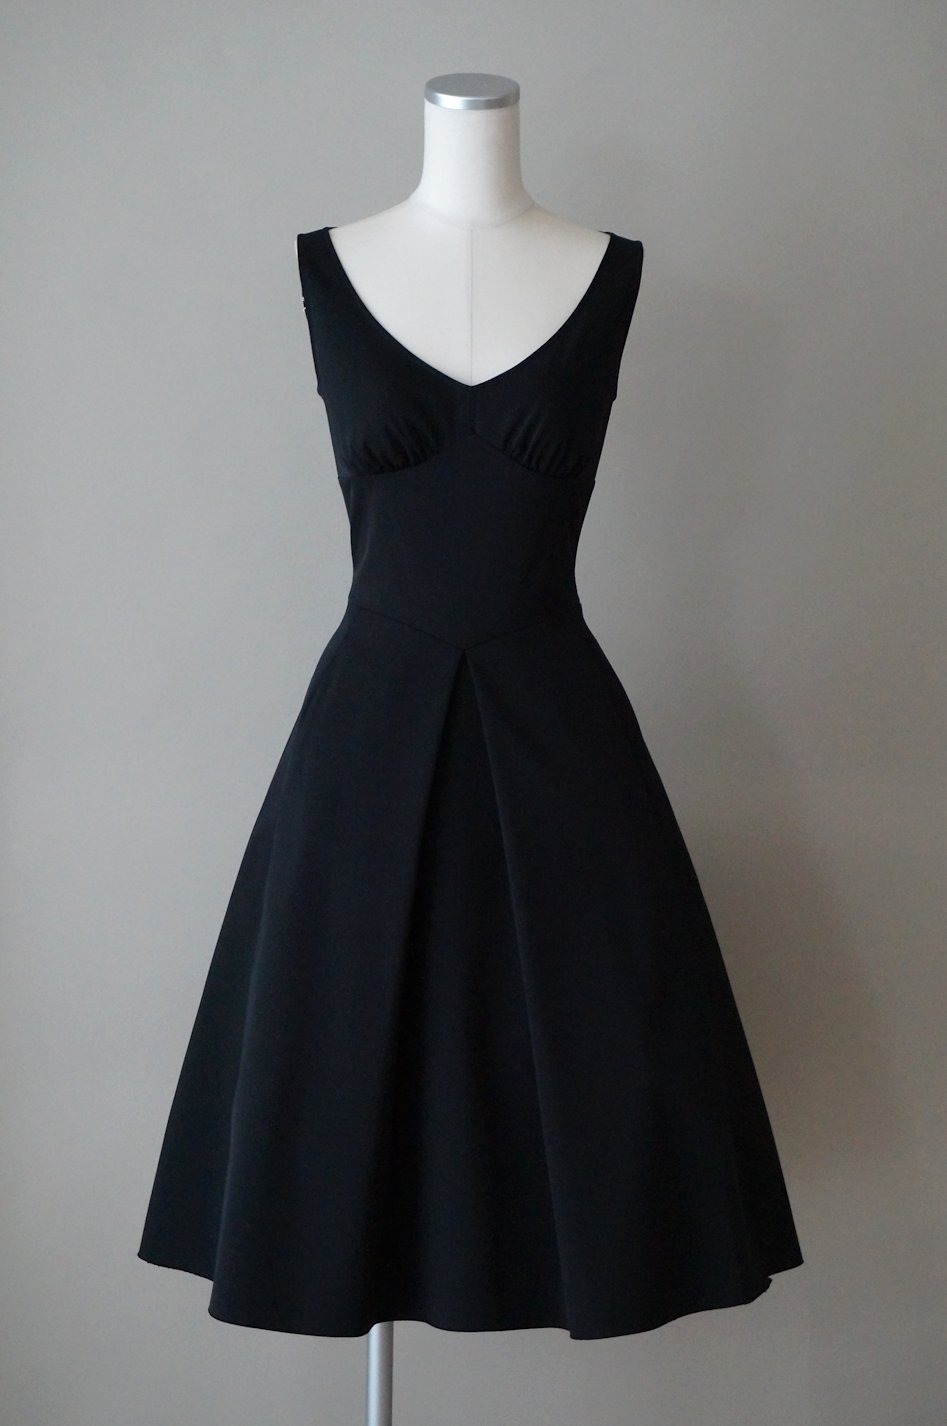 フォクシー フレアーワンピースドレス / レンタルリトルブラックドレス テン Rental Little Black Dress ten.